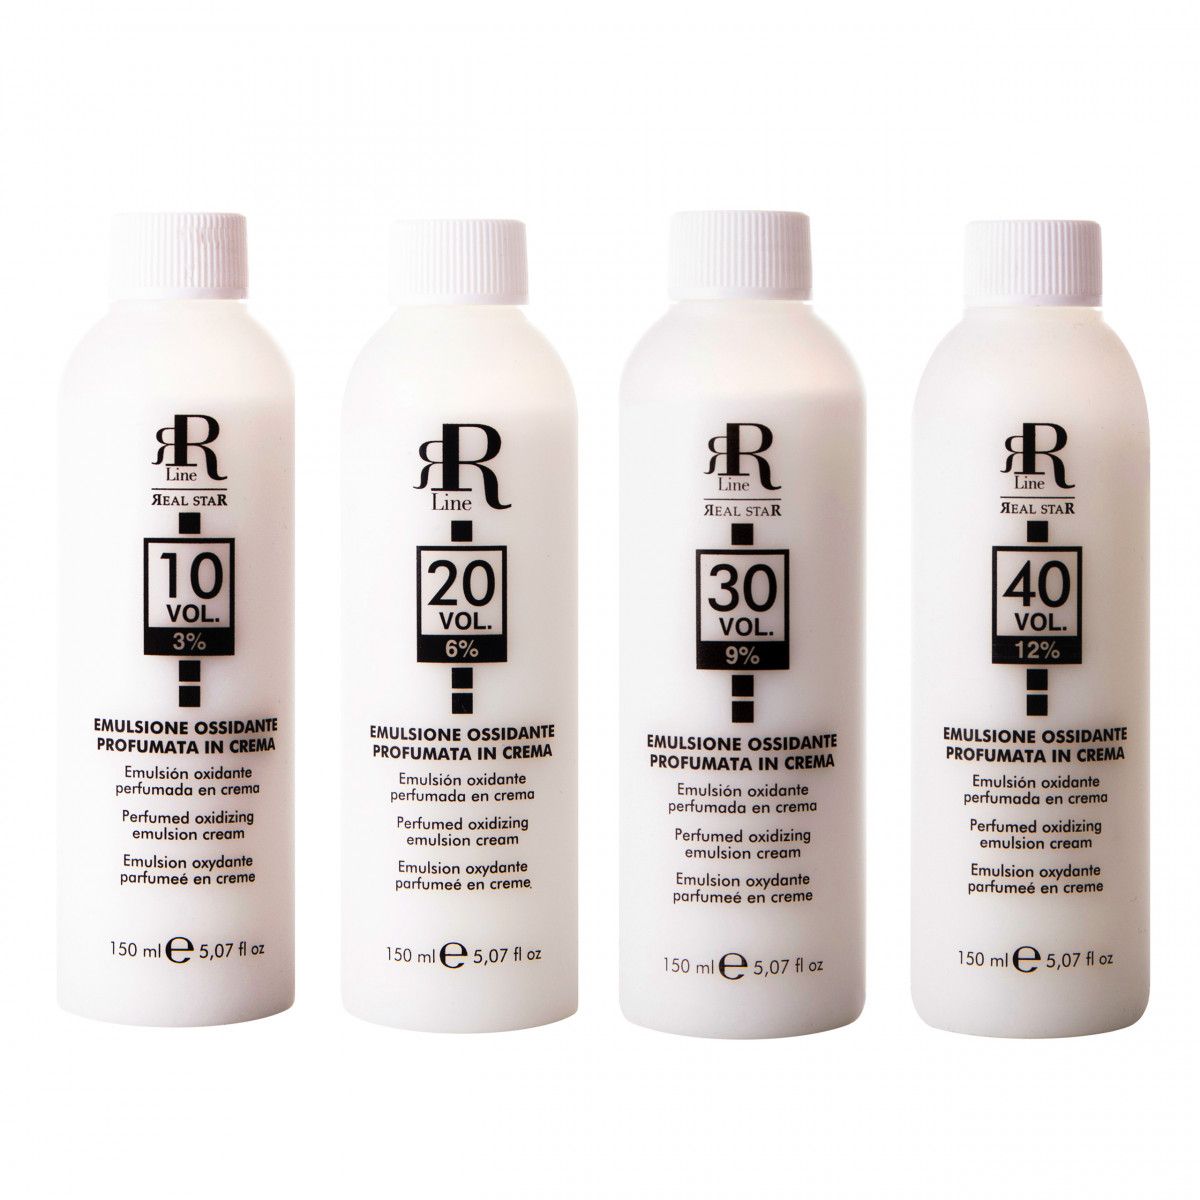 RR Line Perfumed Oxidizing profesjonalny aktywator do farby 150ml